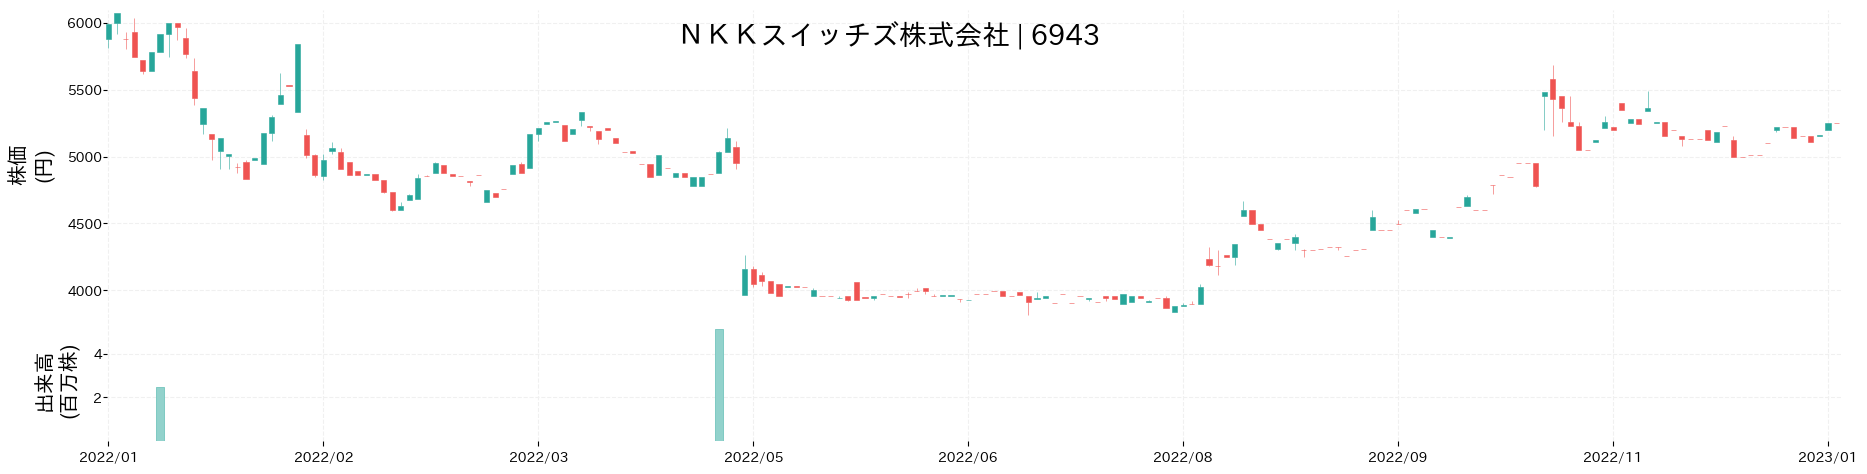 NKKスイッチズの株価推移(2022)